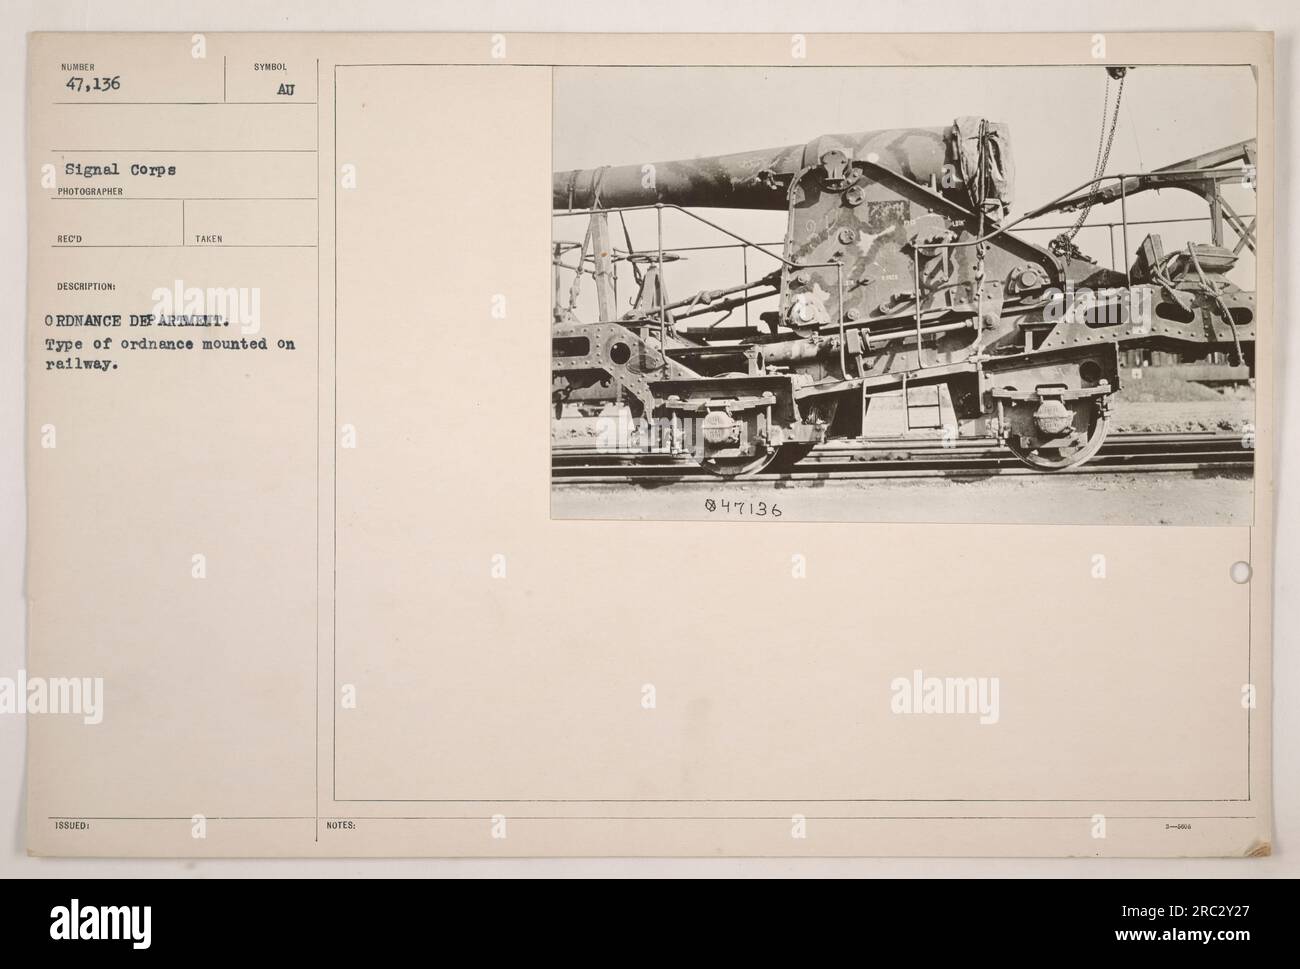 Ein Bild, das eine Art von Geschützen zeigt, die während des Ersten Weltkriegs auf der Eisenbahn montiert waren. Das Foto wurde vom Fotografen RECO des Signalkorps aufgenommen, mit einer von der Regierung ausgestellten Symbol-ATT-WAFFENABTEILUNG. Die Kennzeichnung auf dem Bild ist NOTEB 847136 1-800. Stockfoto